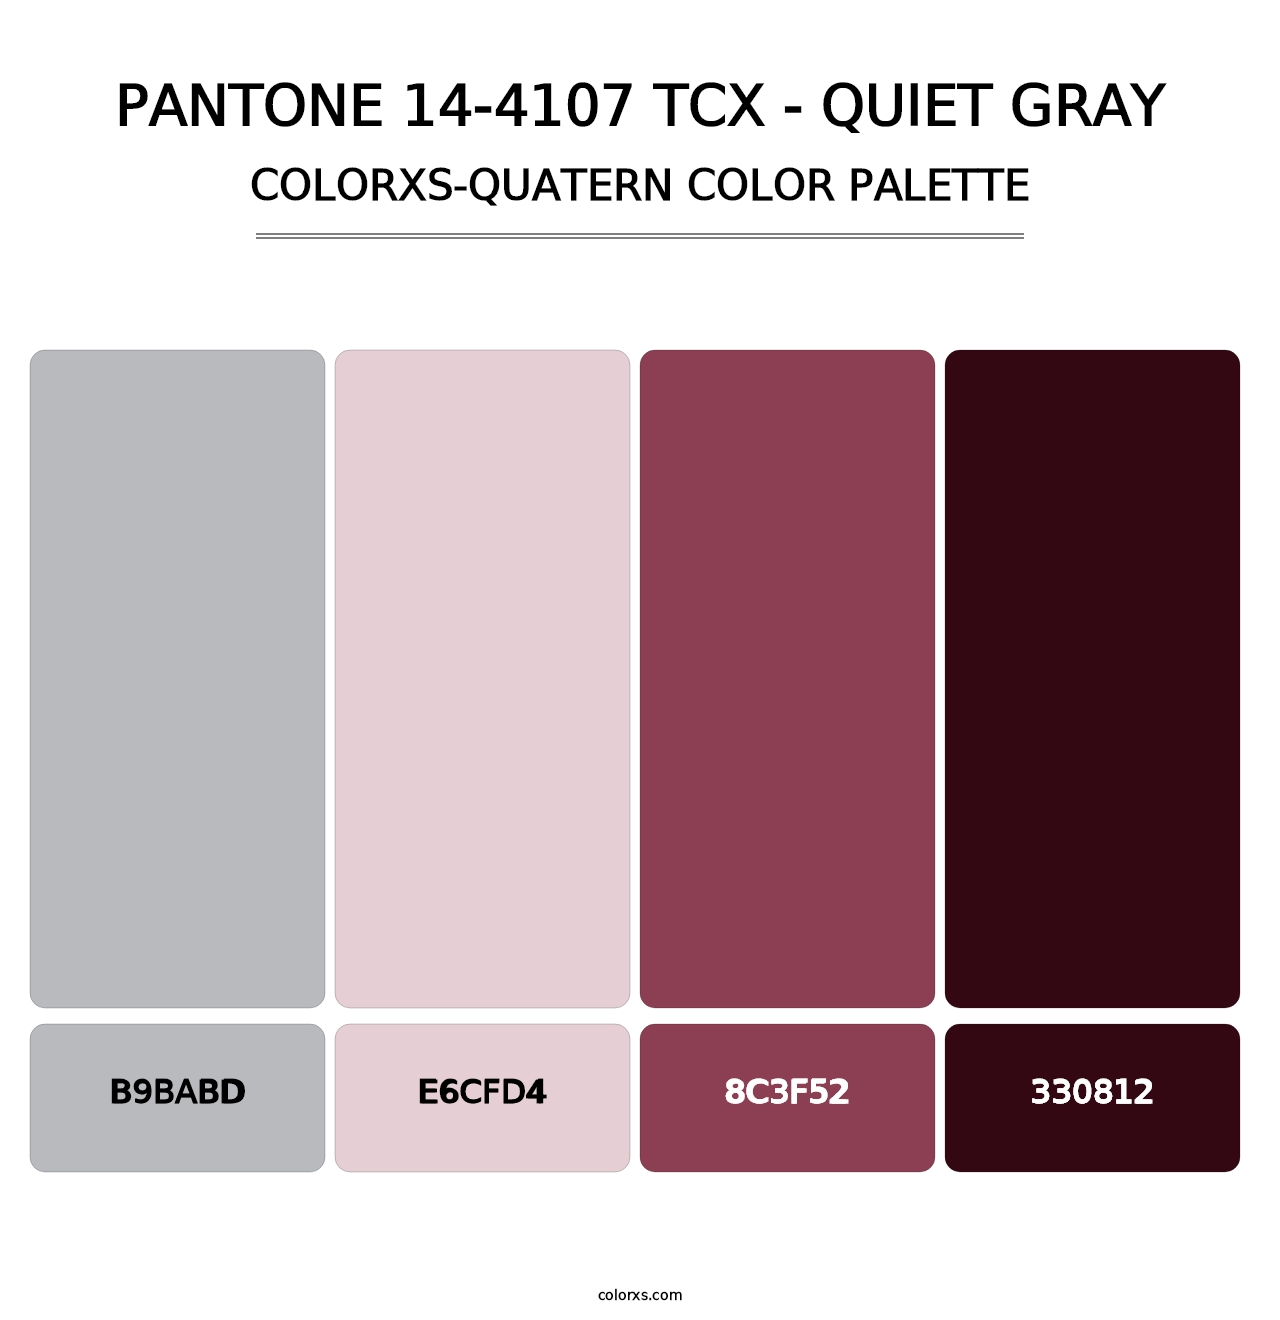 PANTONE 14-4107 TCX - Quiet Gray - Colorxs Quatern Palette